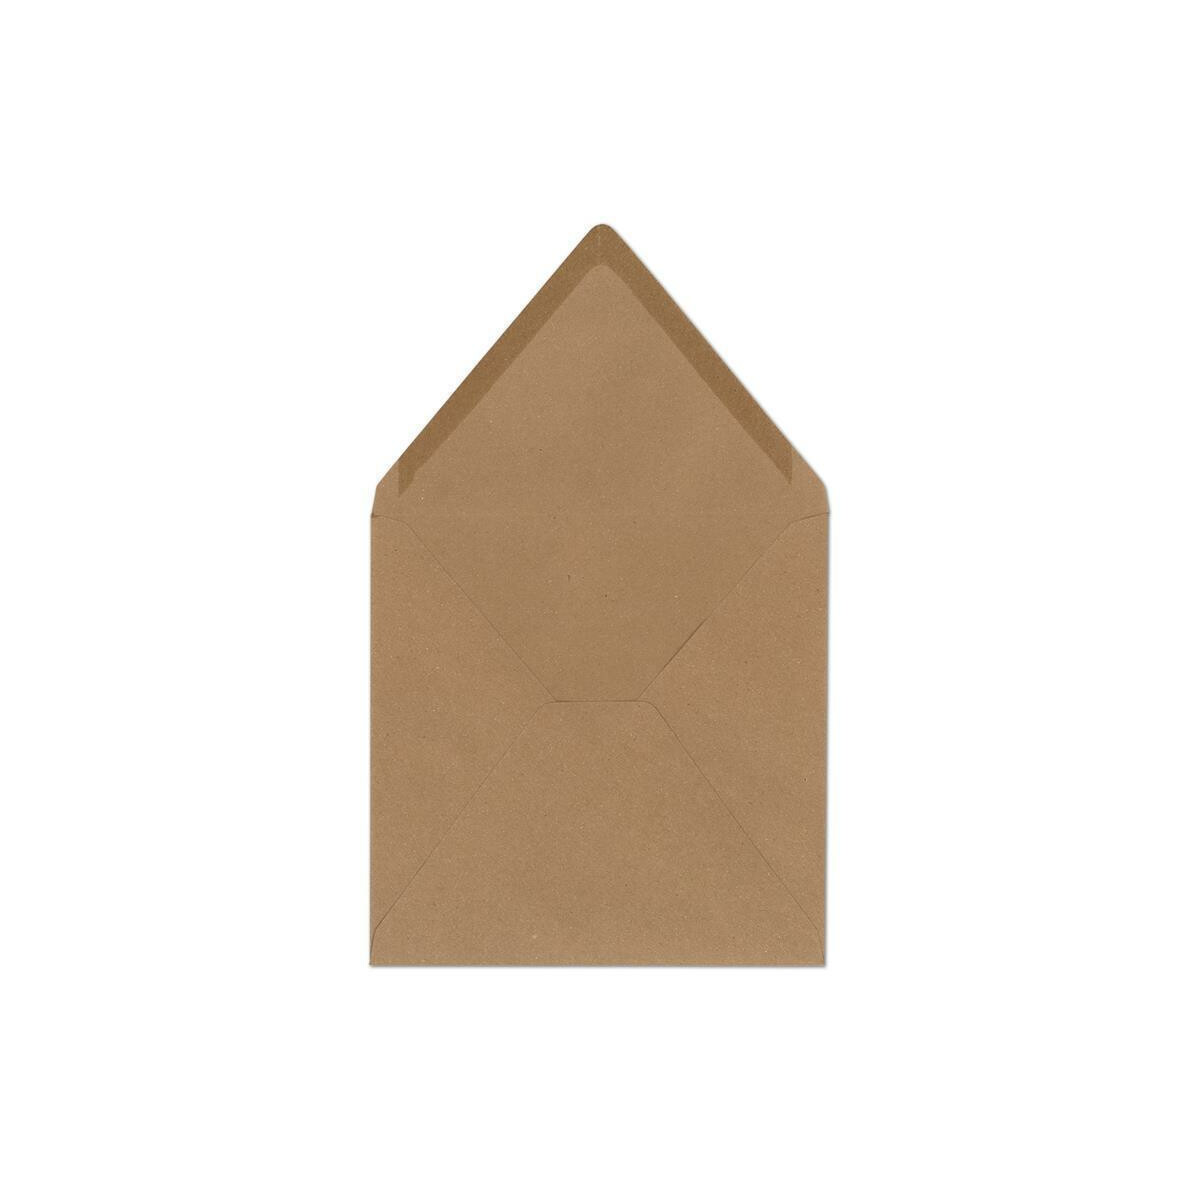 100 Sand-Braun quadratische Briefumschläge aus Naturpapier Kraftpapier 15x15cm